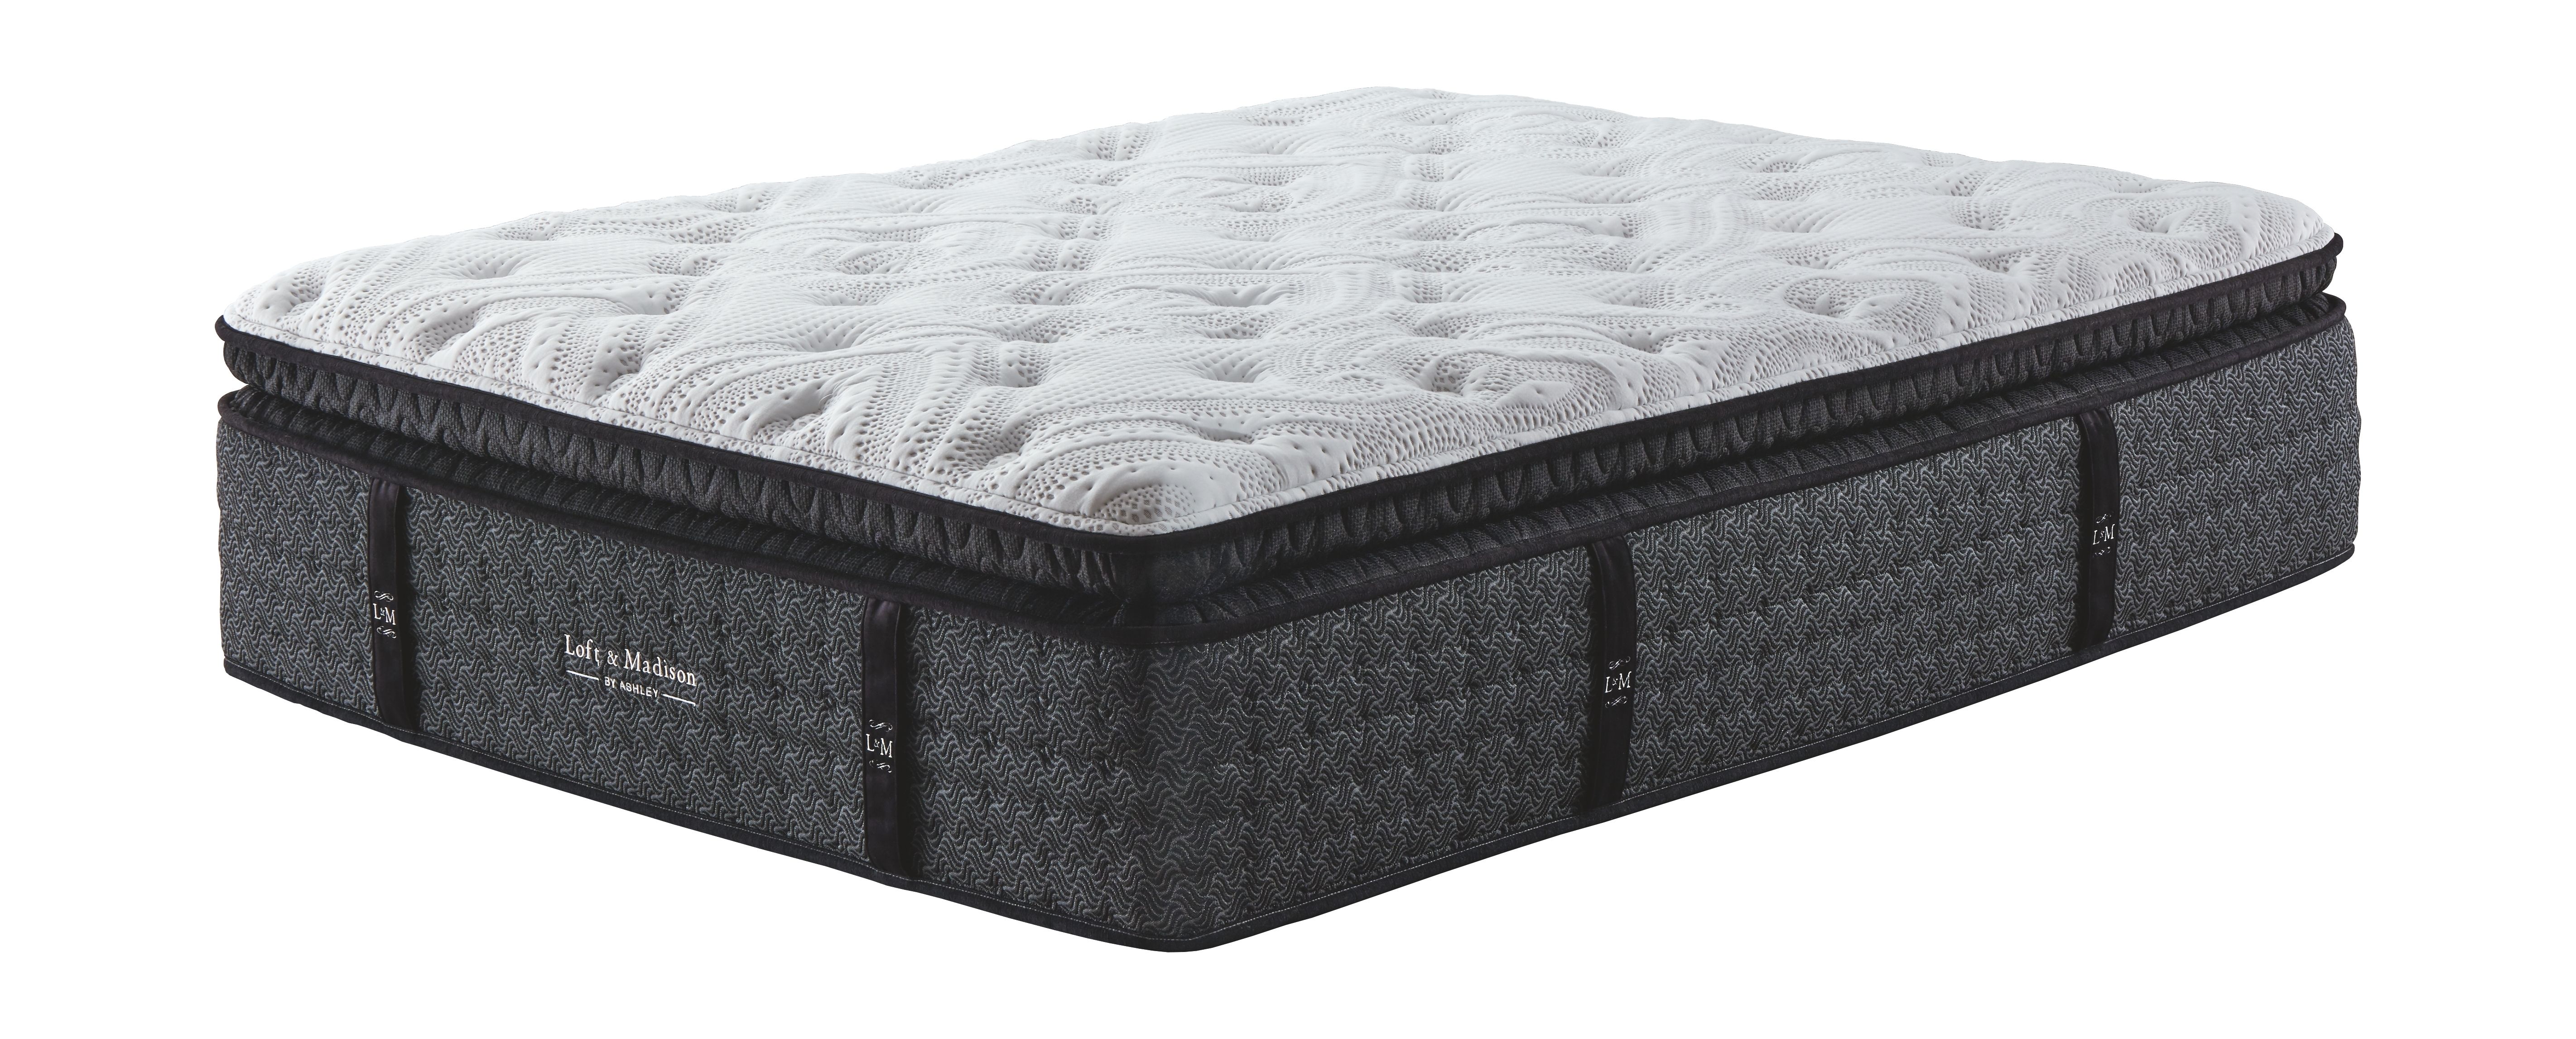 loft and madison ultra plush mattress reviews